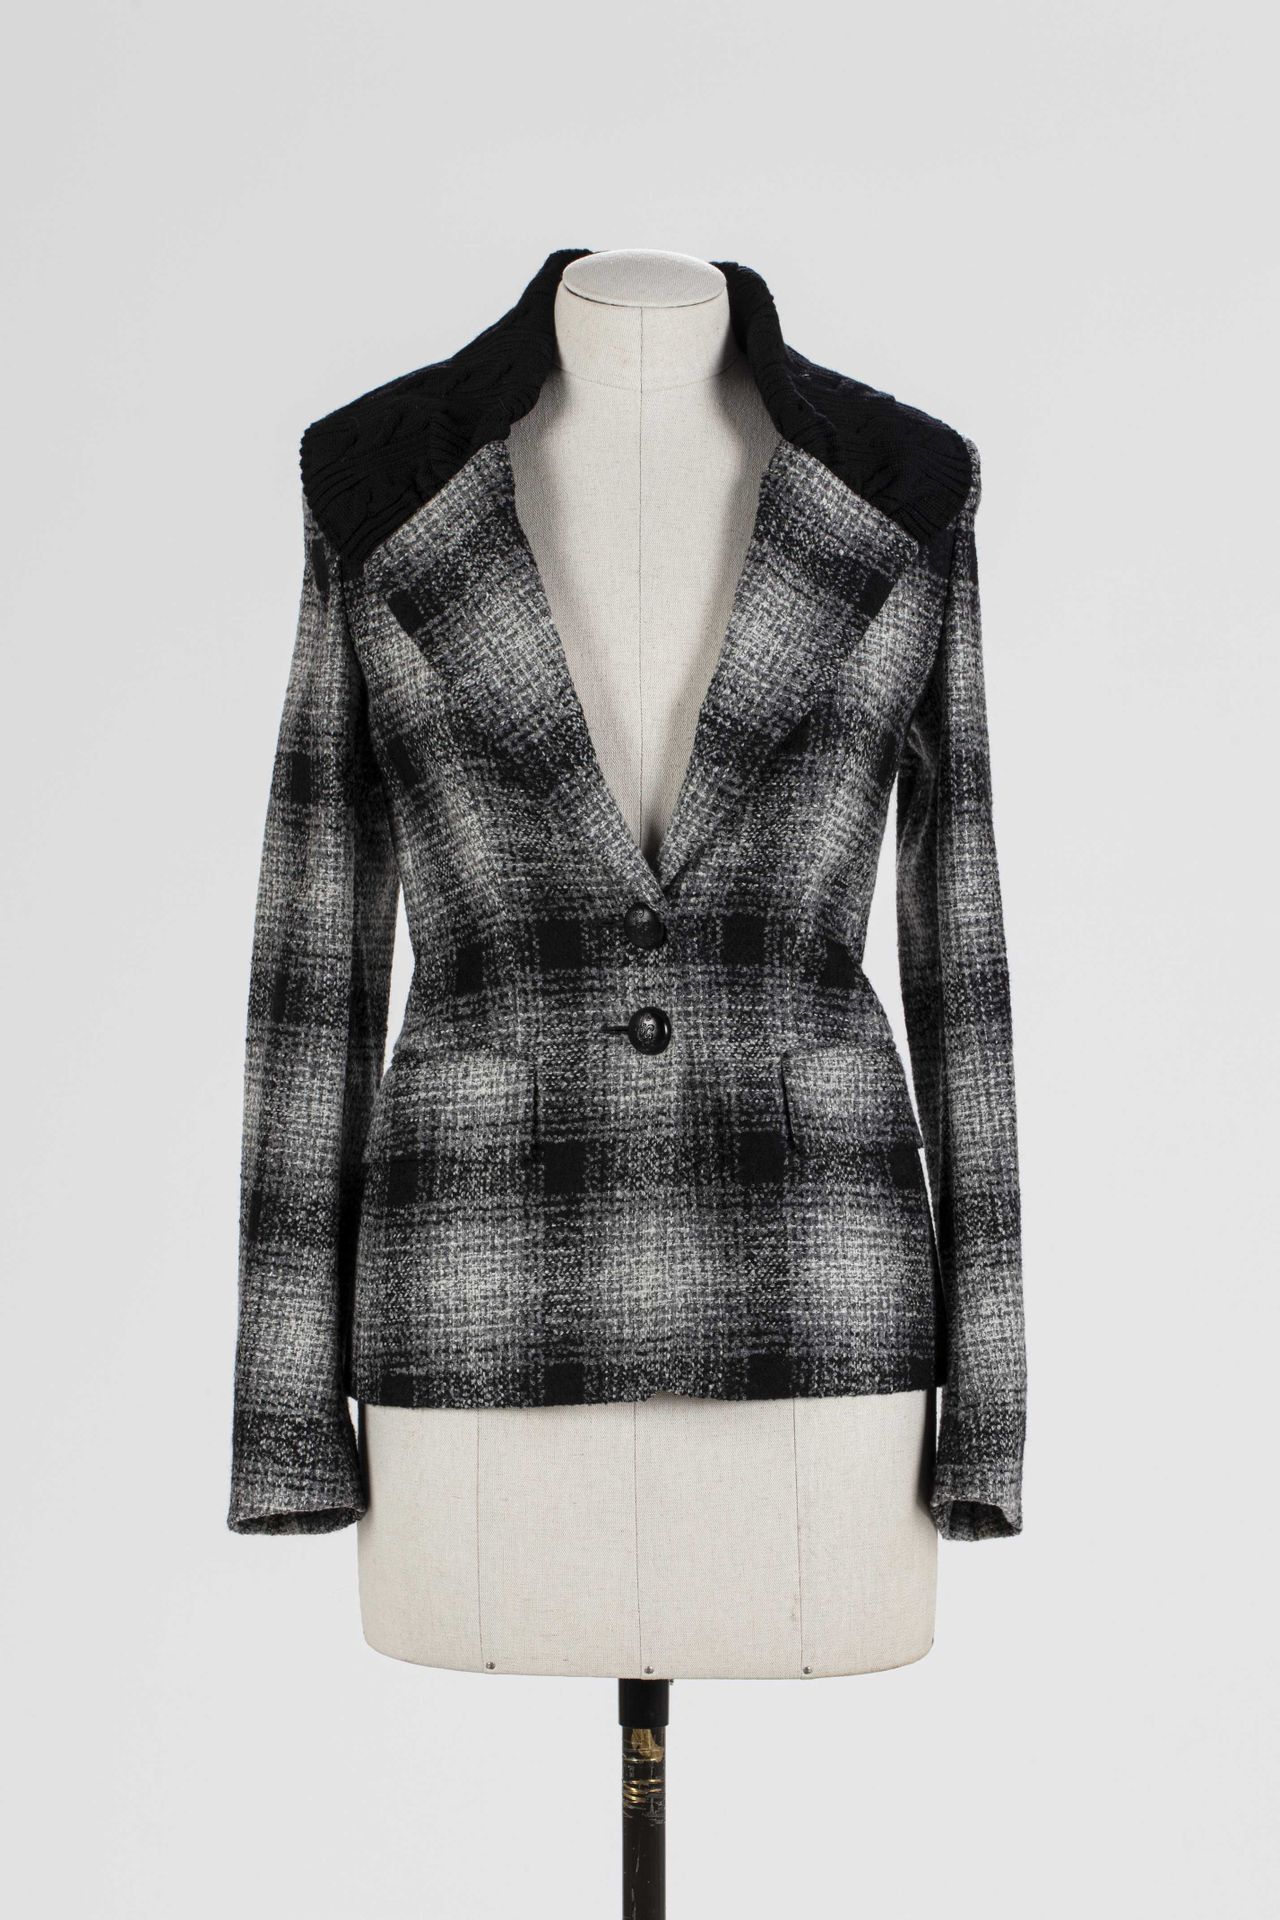 Null ESCADA: 羊毛和聚酰胺夹克，灰黑白格子花纹前襟，黑色羊毛后背，单排扣，带标志。

T.34